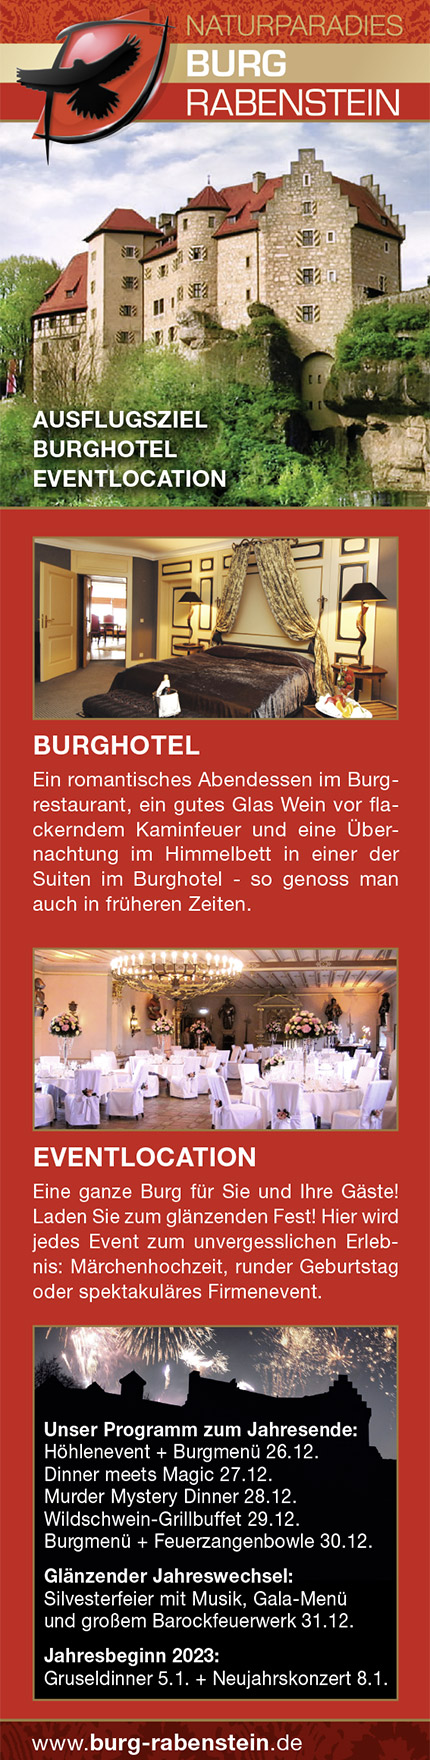 Burg Rabenstein – Burghotel und Eventlocation – Unser Programm zum Jahresende